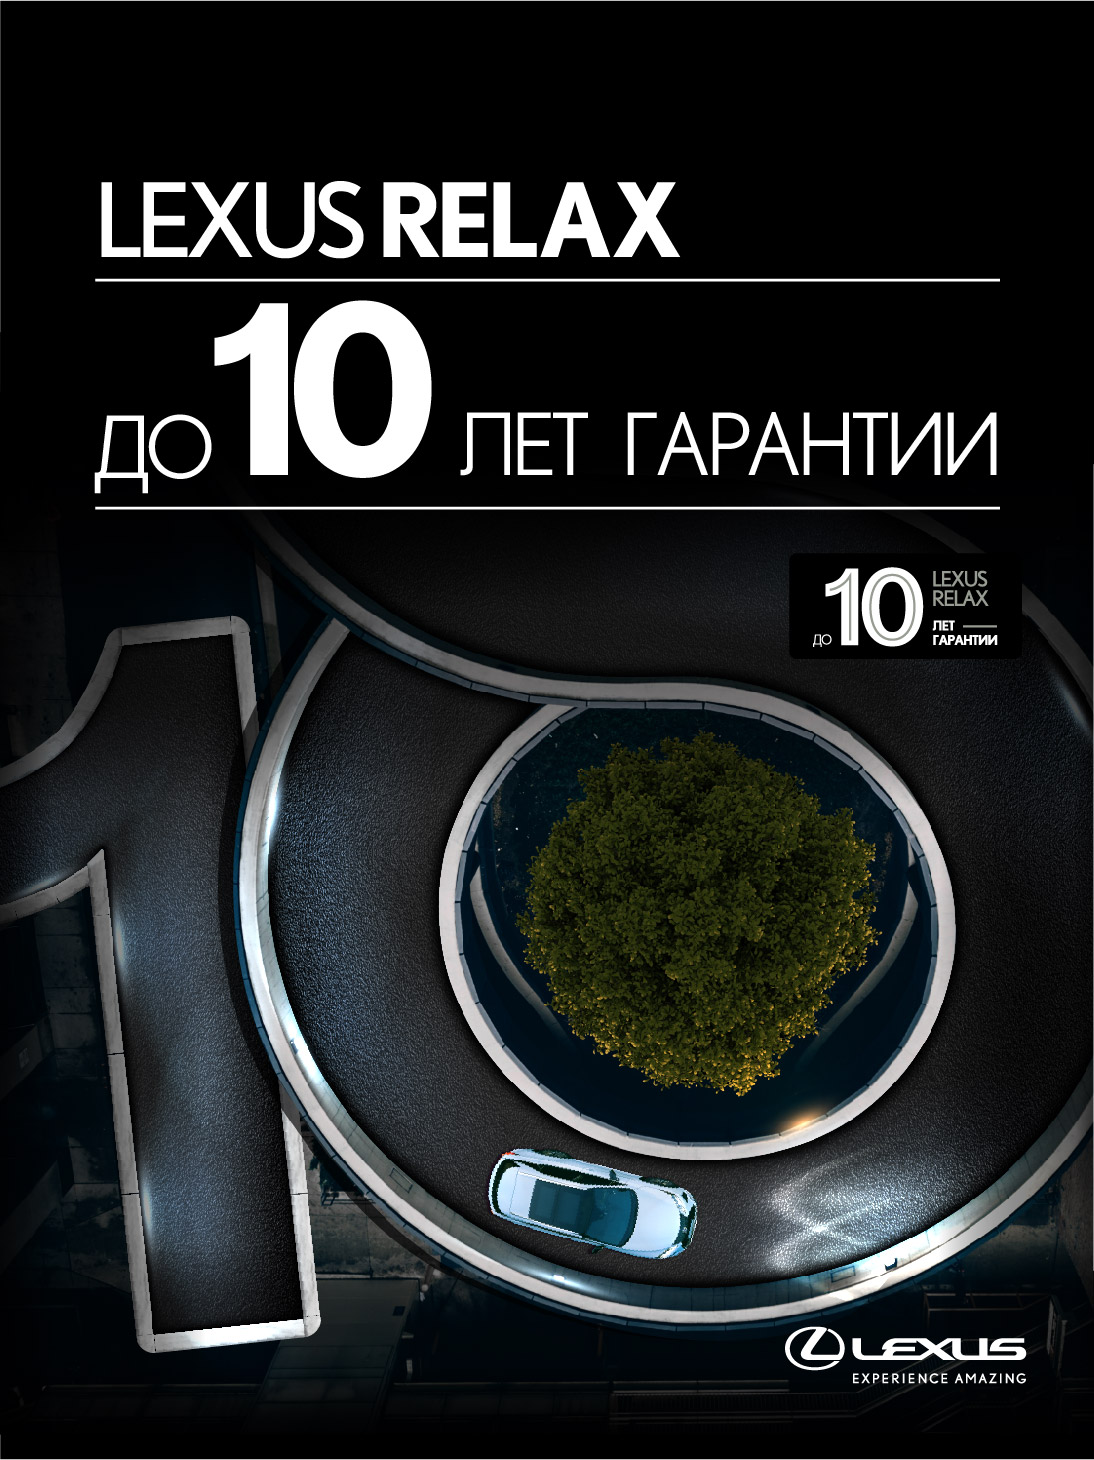 lexus-relax-525x700px_рус